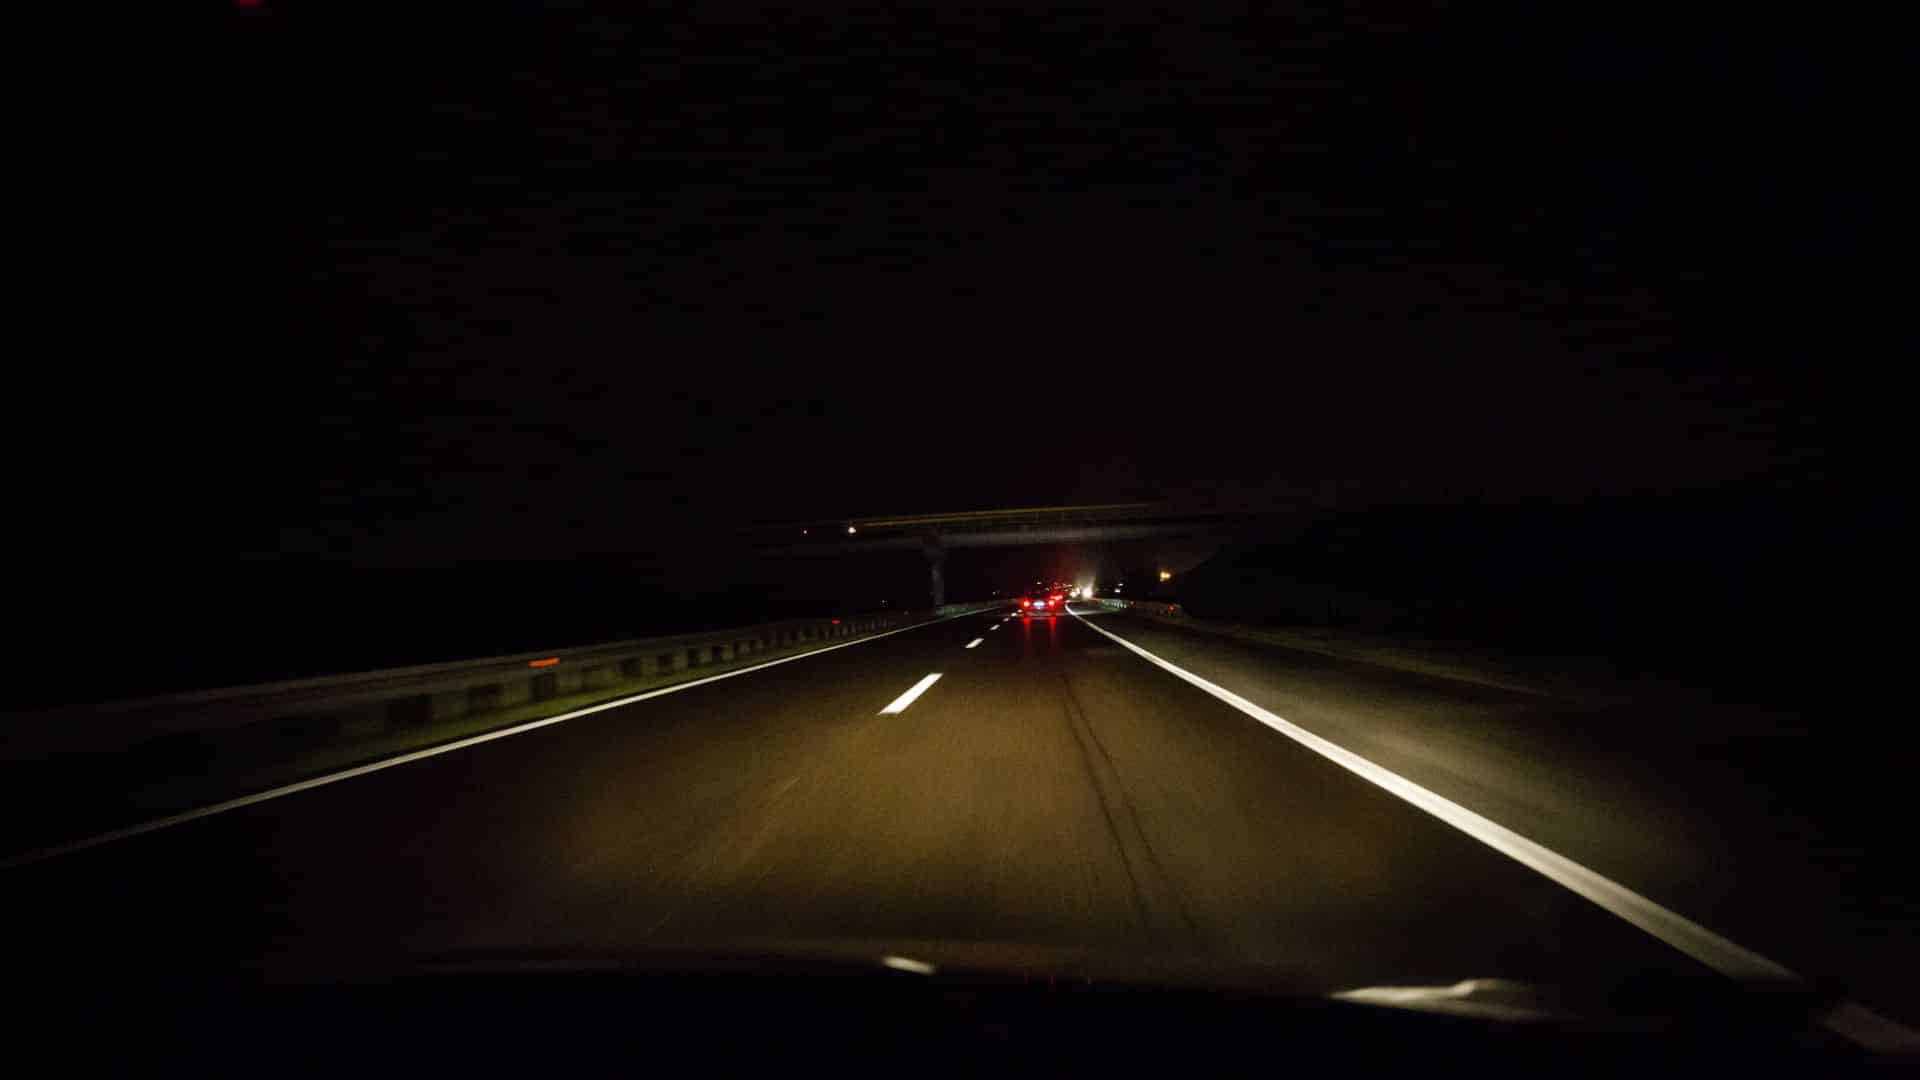 Bil som kjører på motorvei i mørket, mørkekjøring